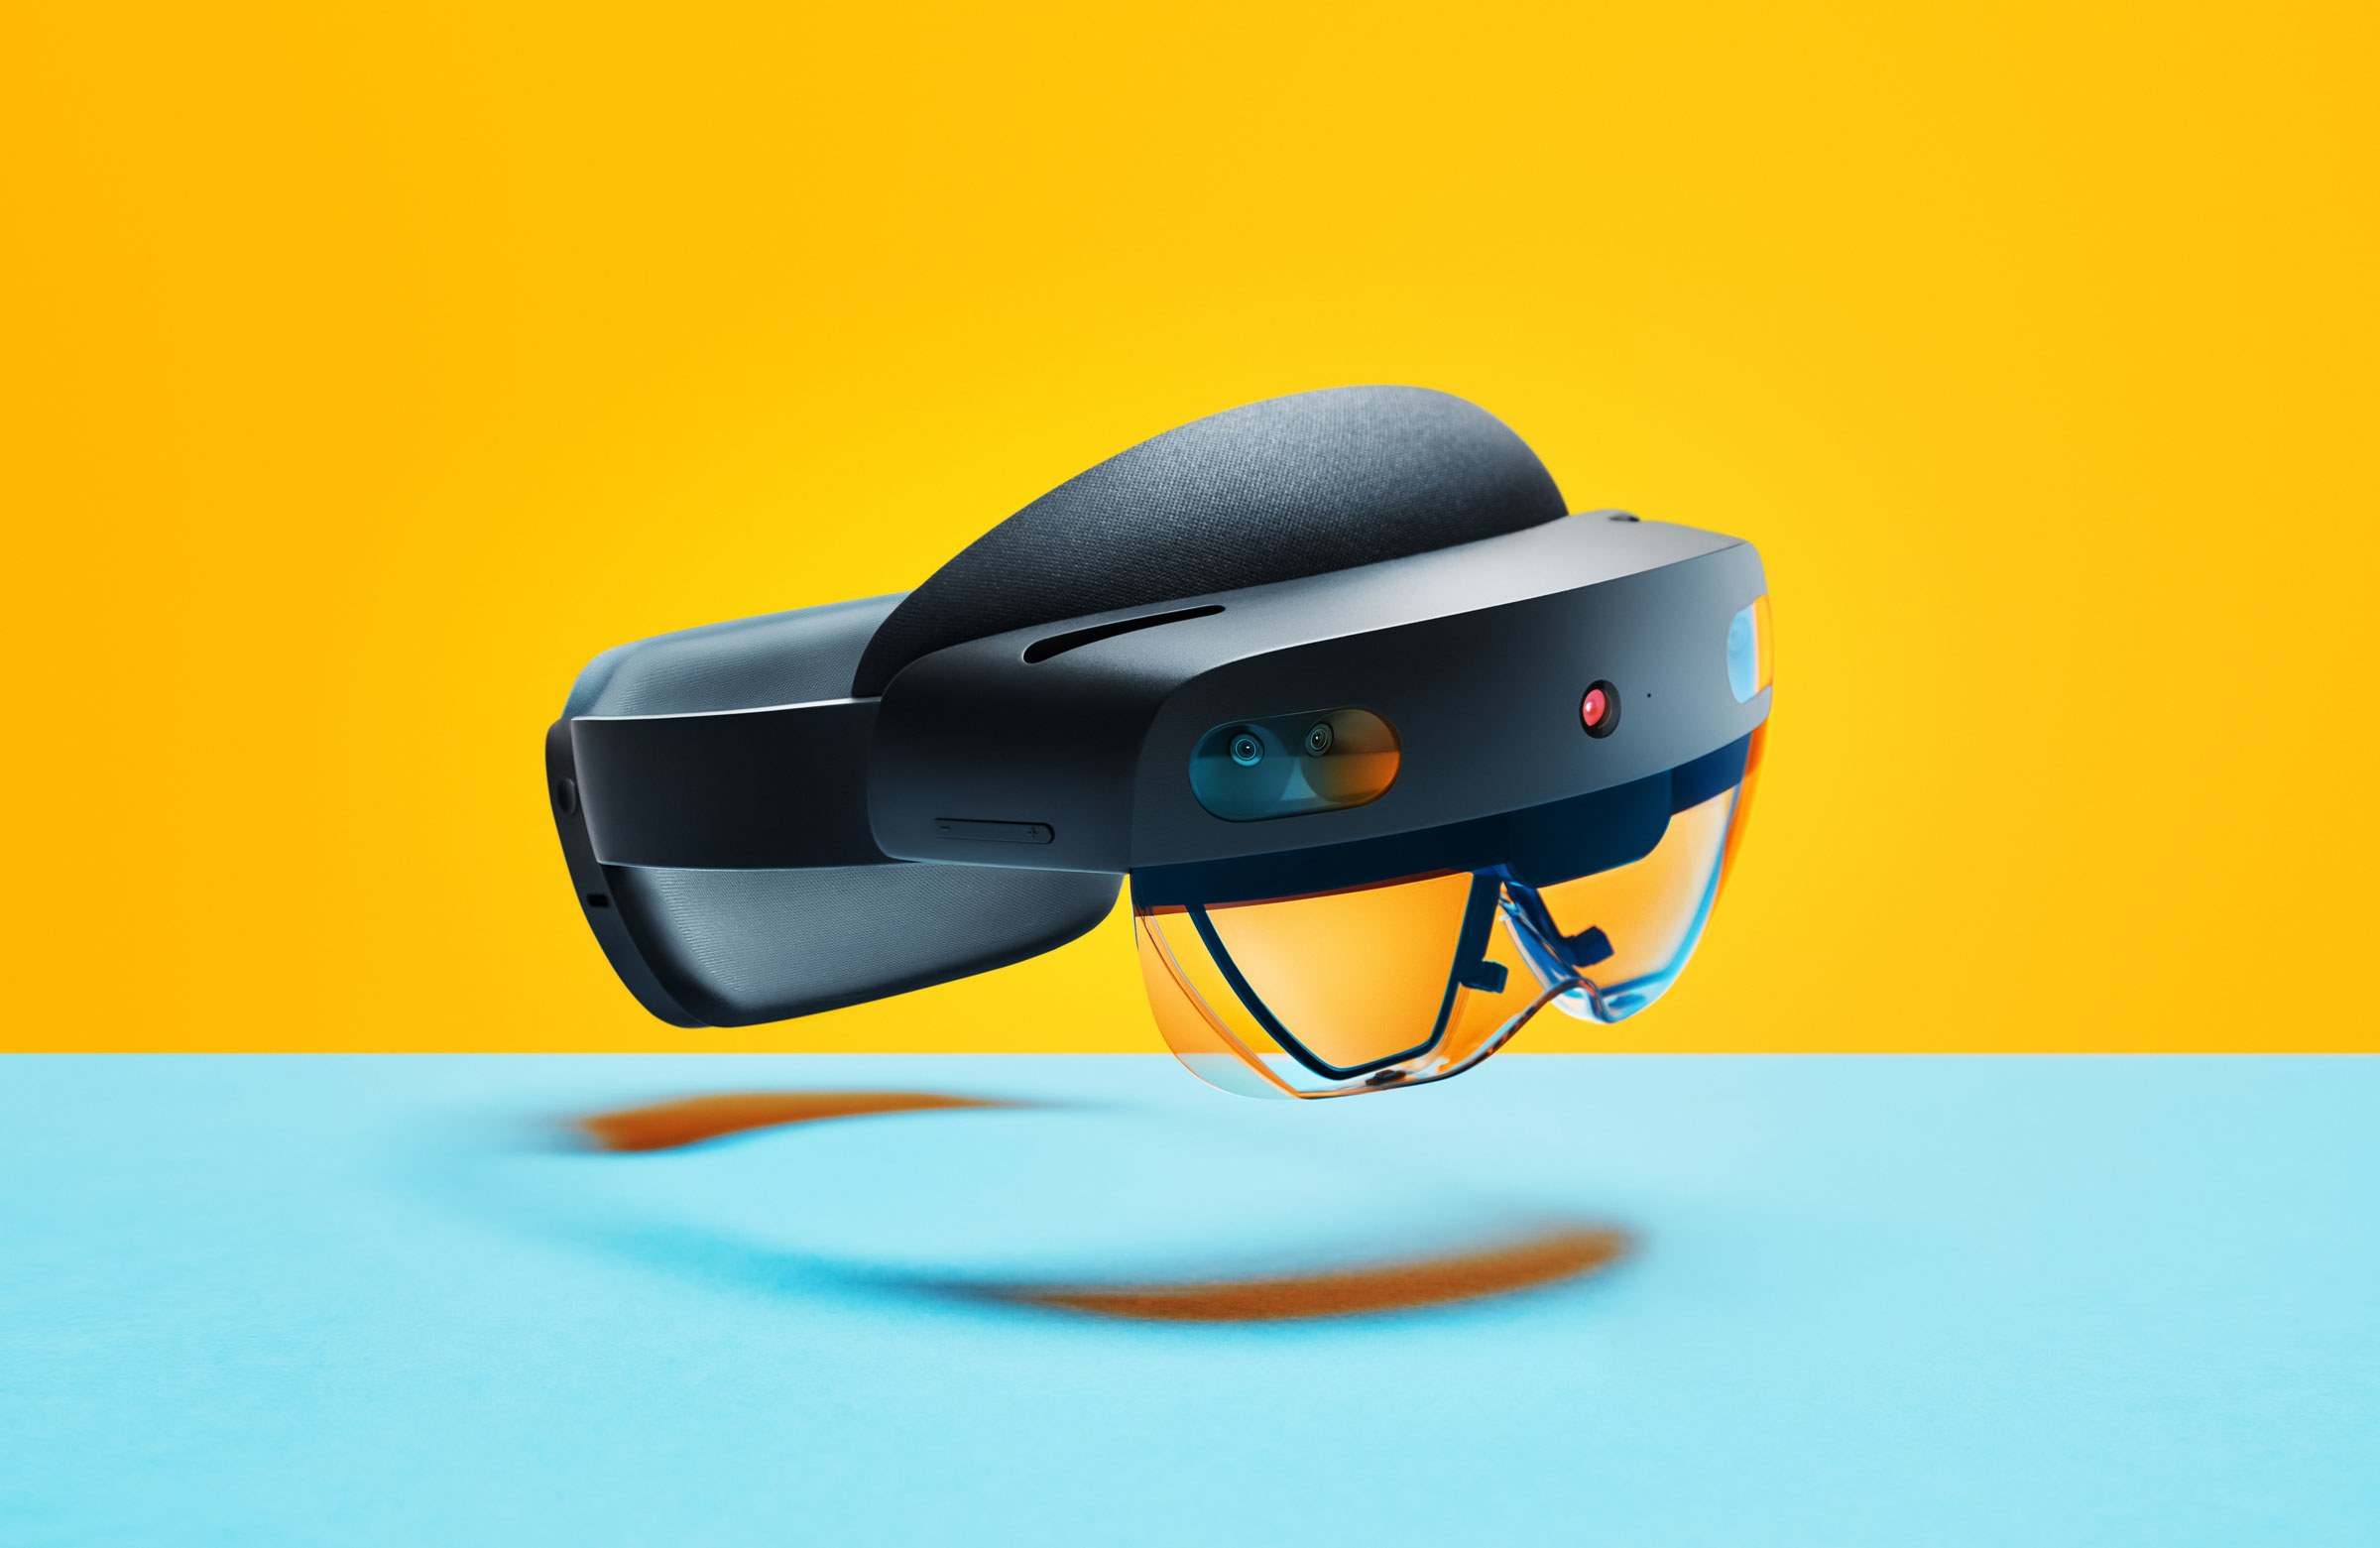 نظارة الواقع المختلط HoloLens 2 ستطرح في الأسواق الشهر المقبل